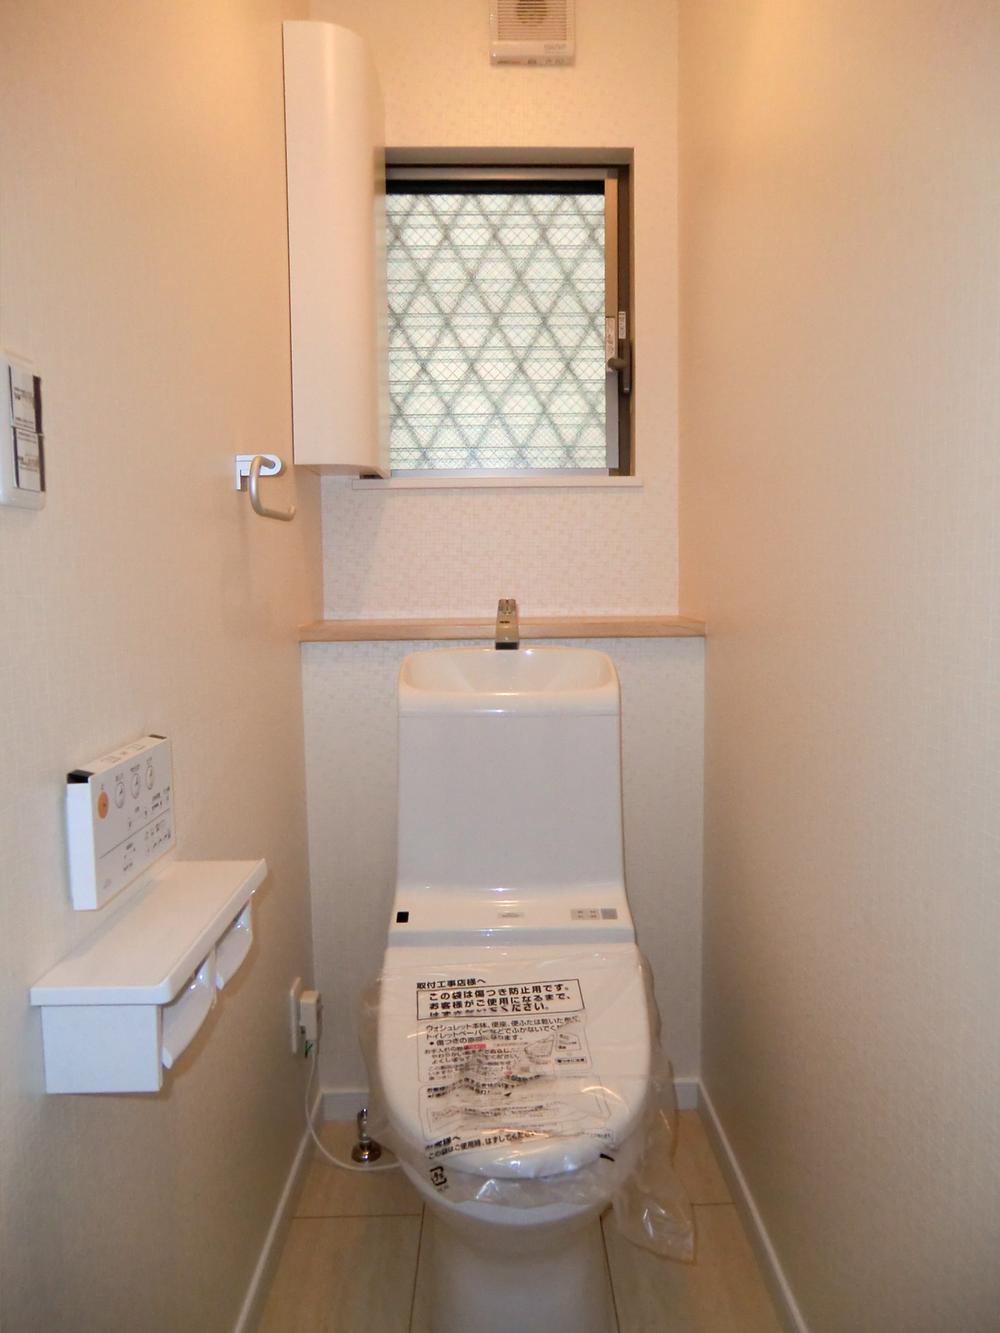 Toilet. Indoor (July 5, 2013) Shooting